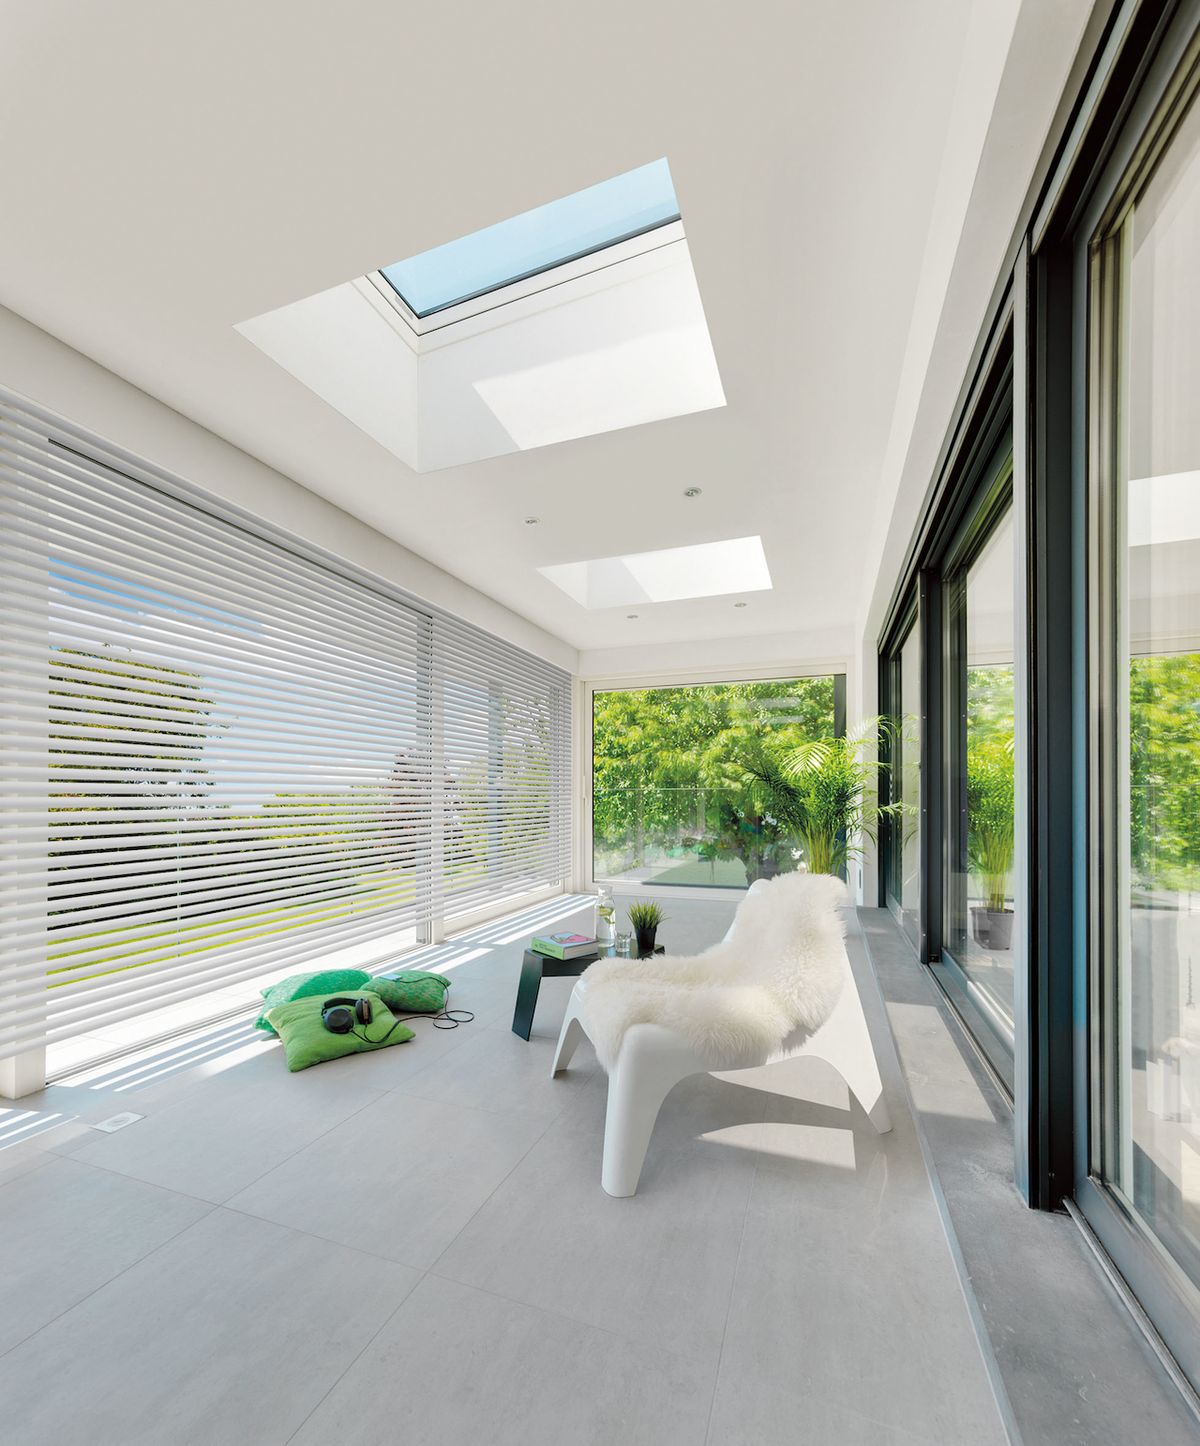 Okna DXF do plochých střech byla konstruována a vyrobena z materiálů nejvyšší kvality, s využitím inovativních řešení a důrazem na estetiku. 